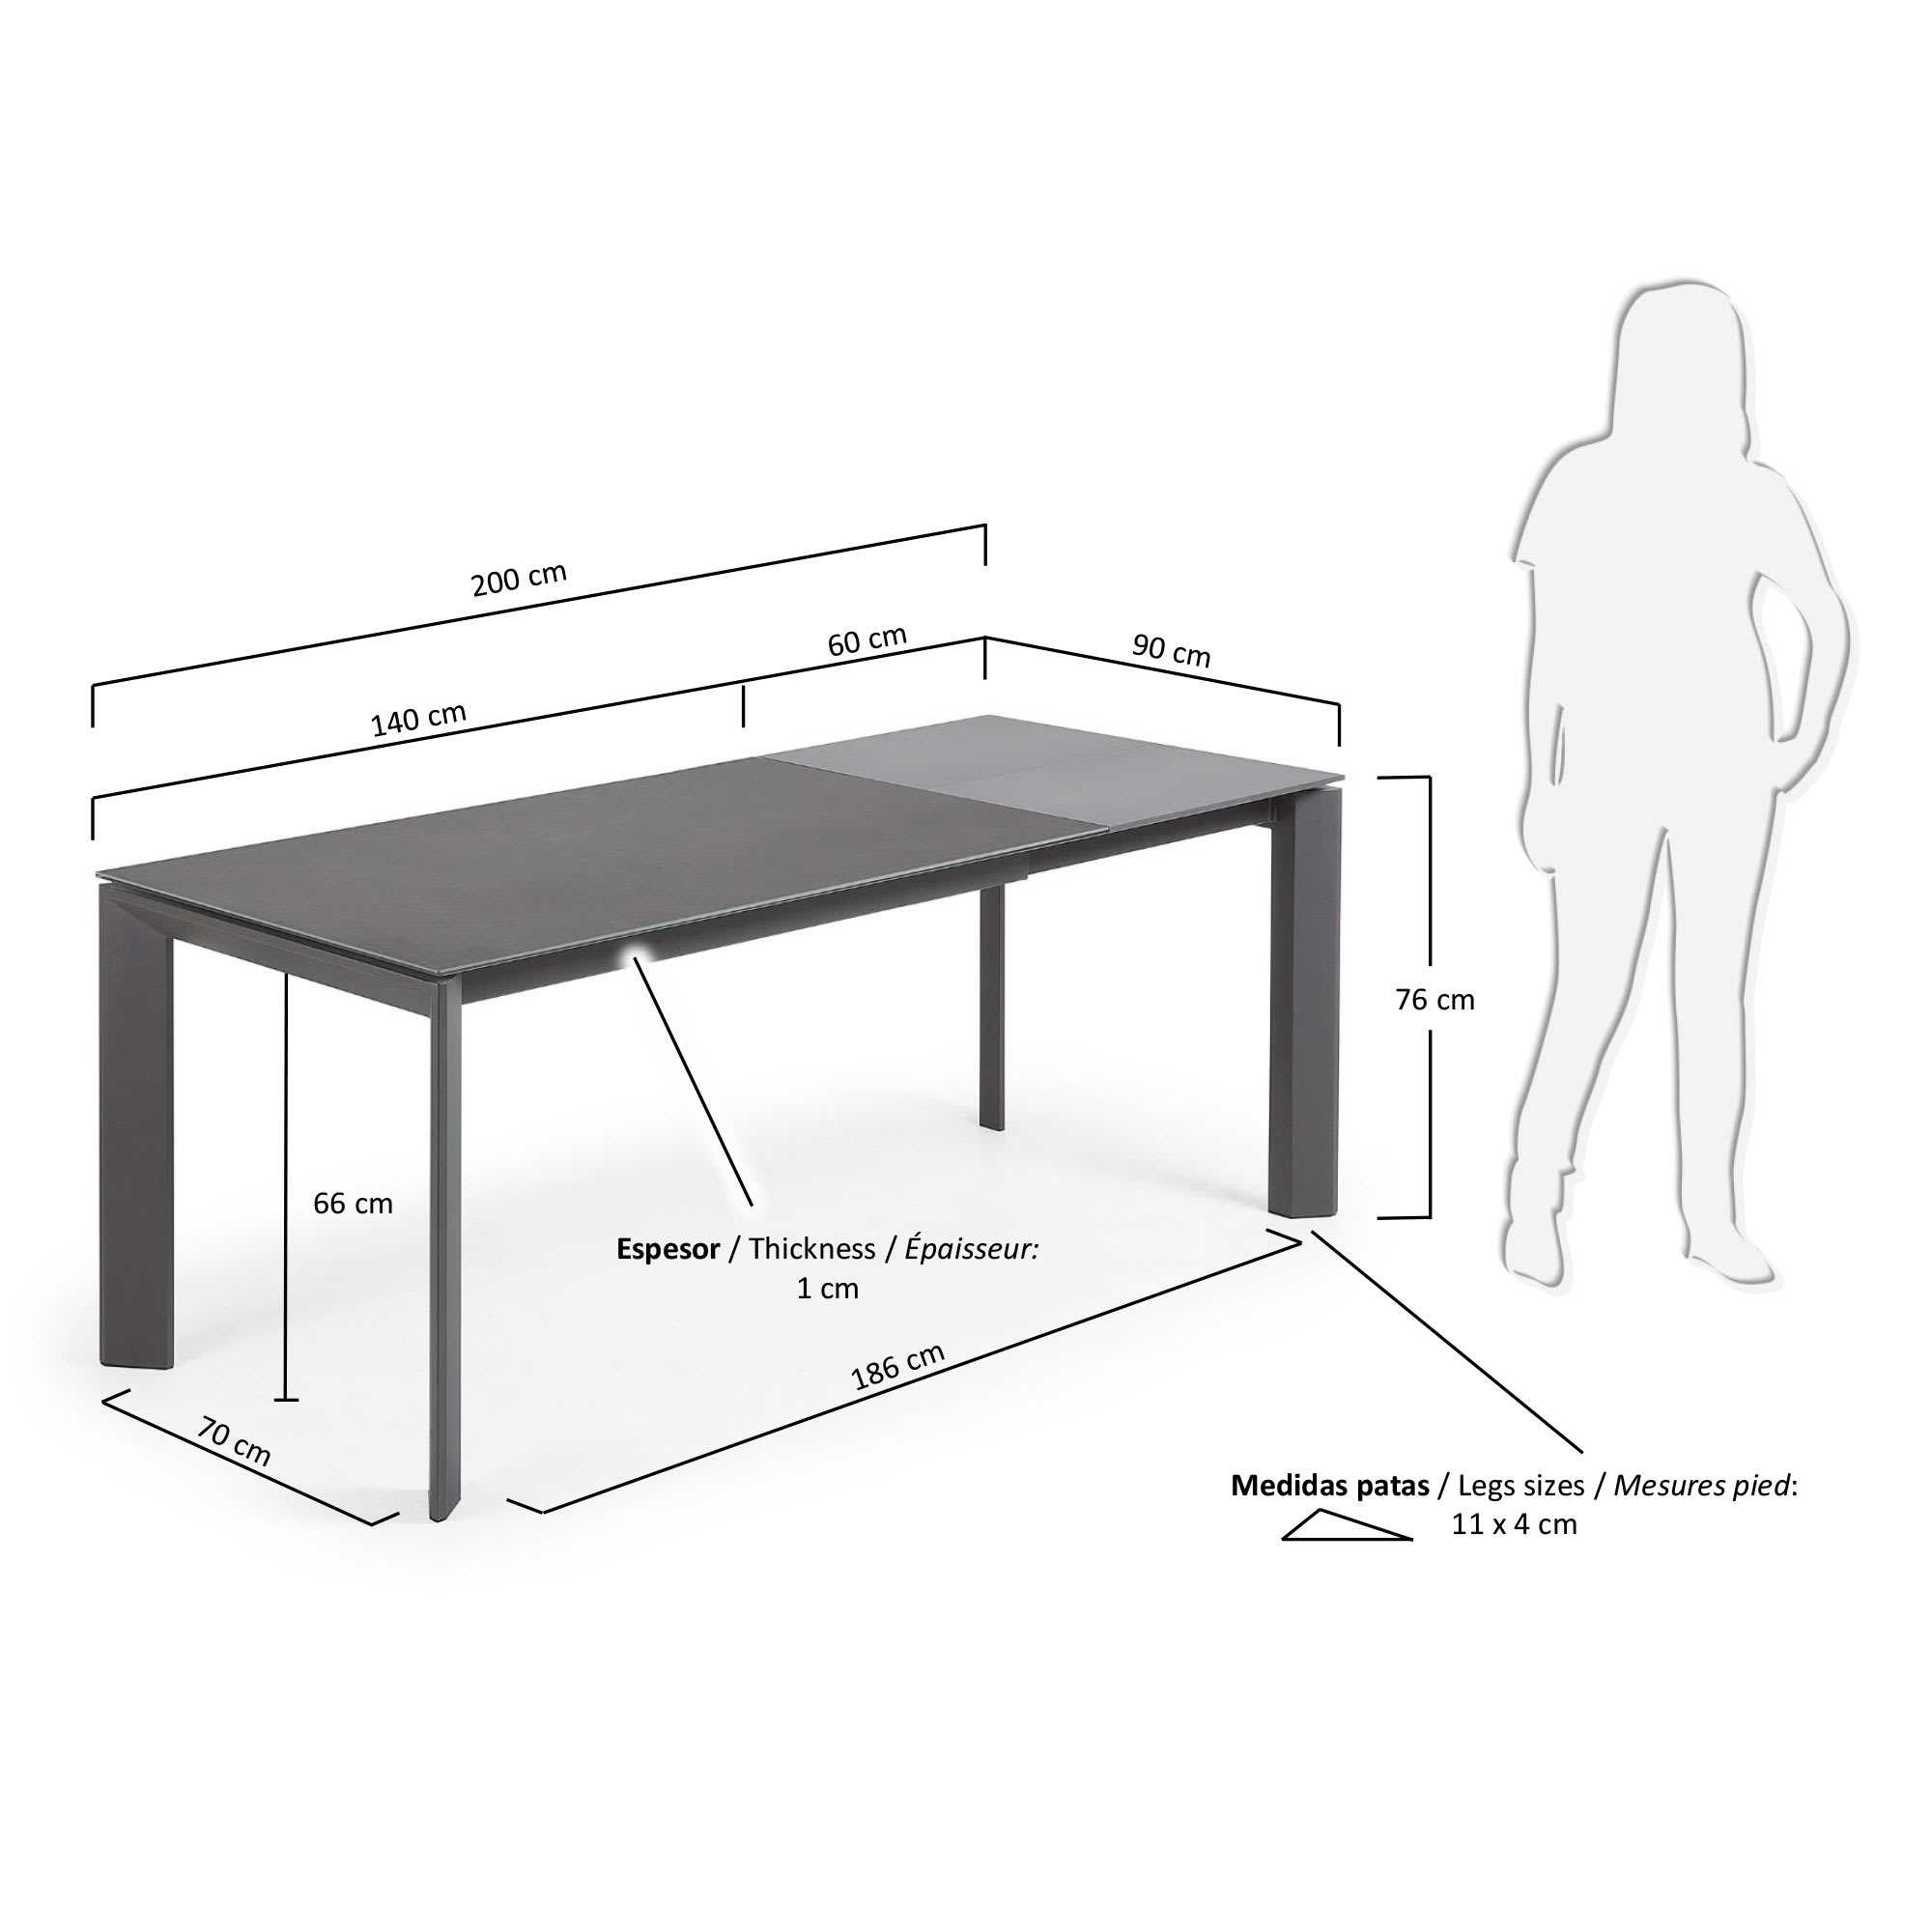 엑시스 세라믹 확장형 테이블 VR(90 x 140-200cm) - 크기